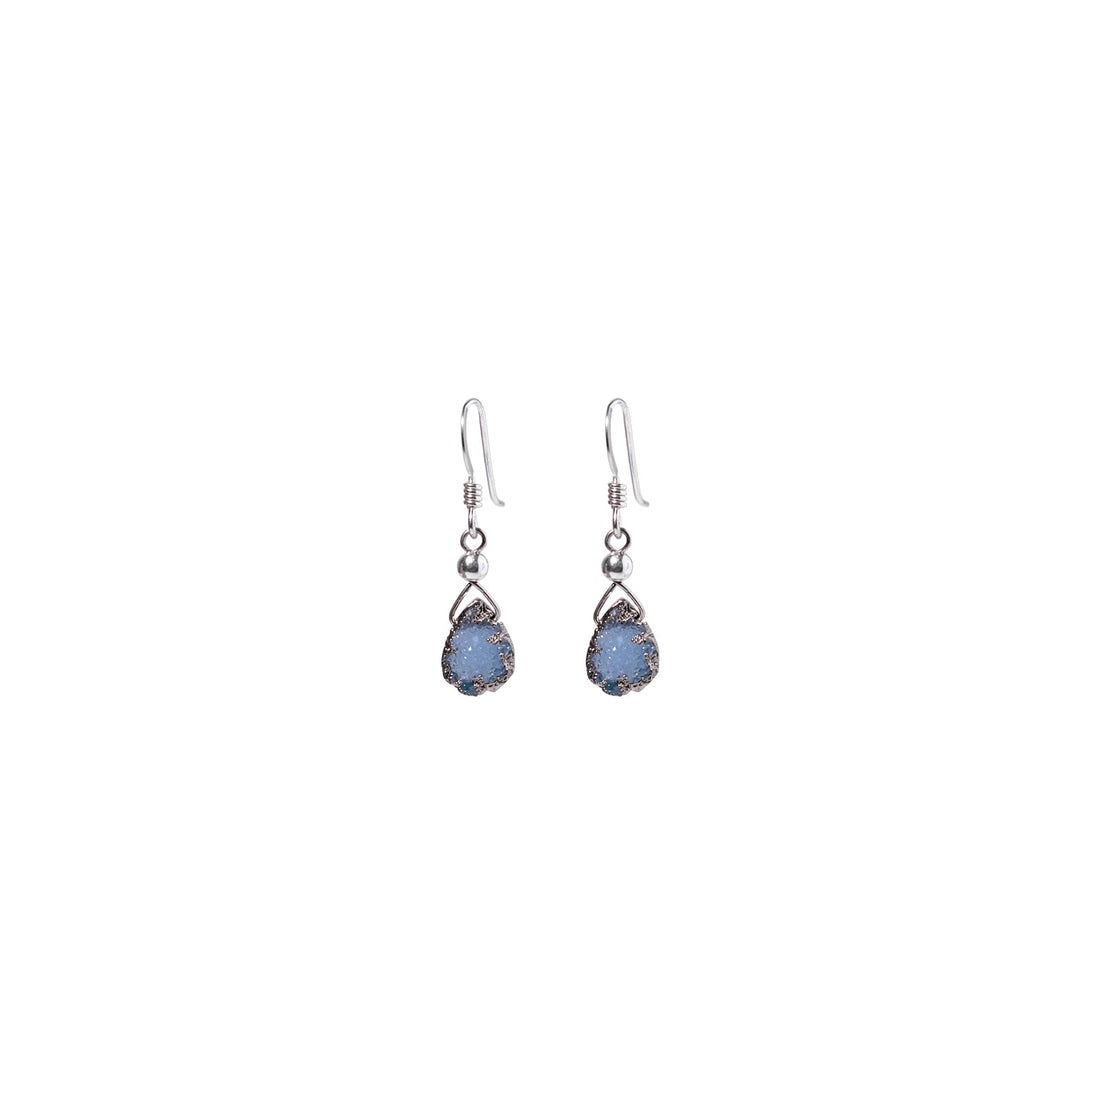 Julianna Earrings, Blue Druzy Almond with Contoured Silver Bezel Earrings Sayulita Sol 